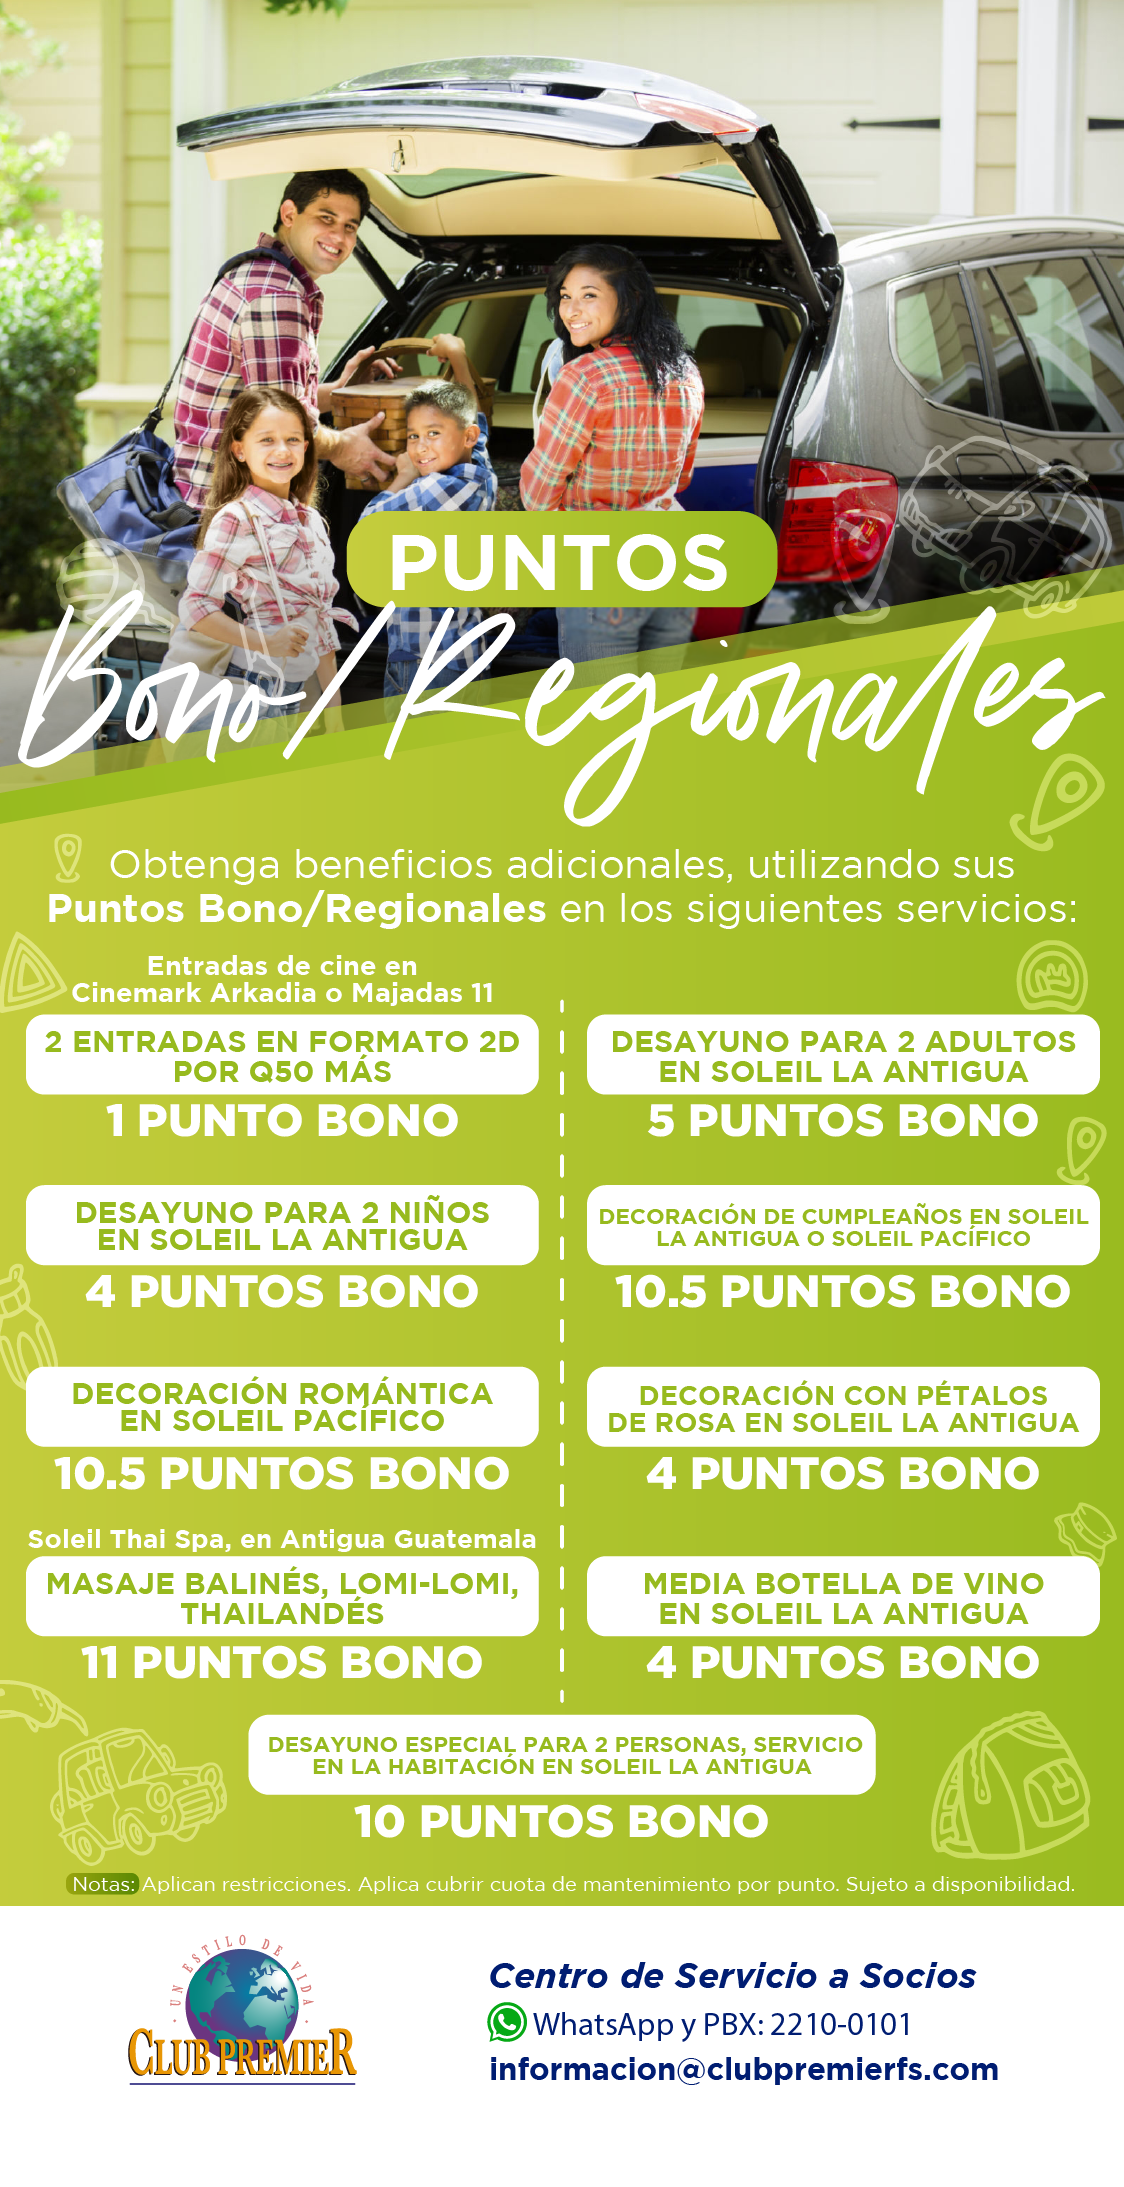 Beneficios con Puntos Bono / Regionales